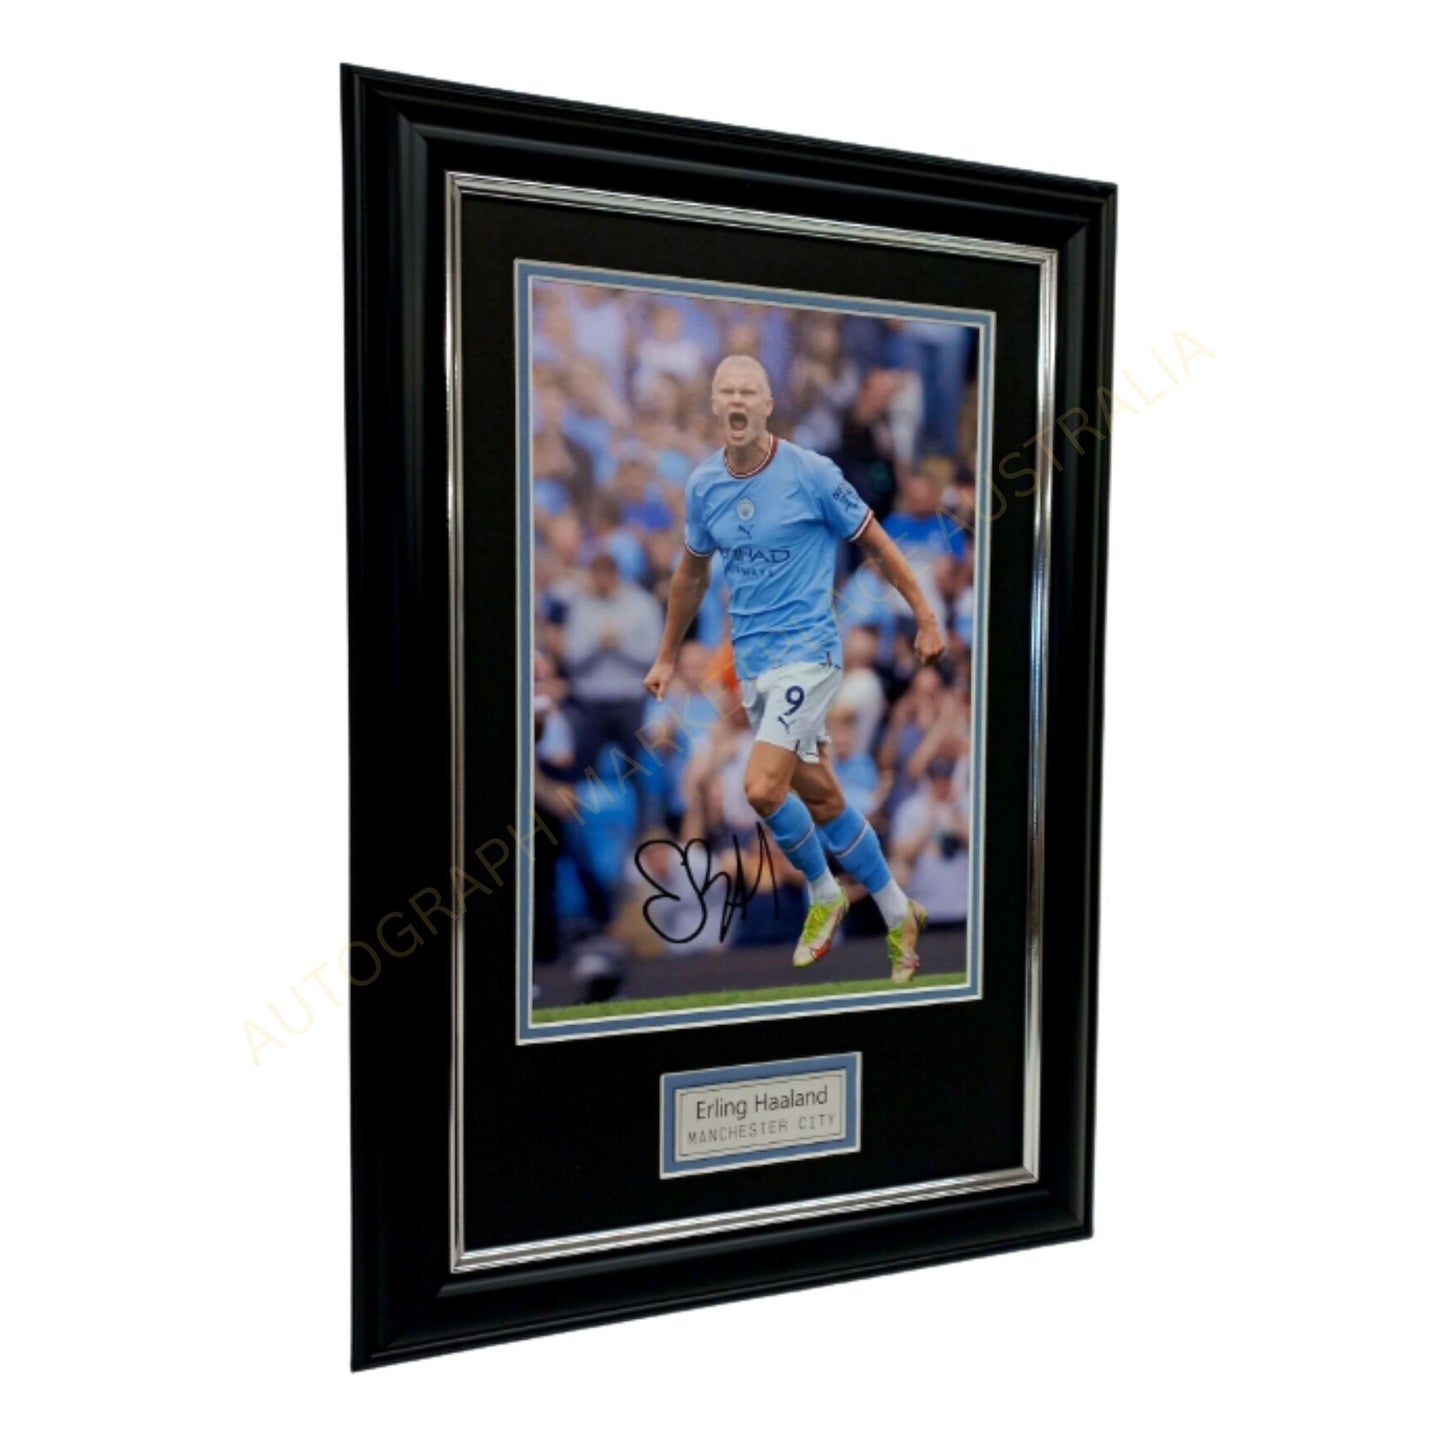 Erling Haaland Signed Framed Manchester City Memorabilia